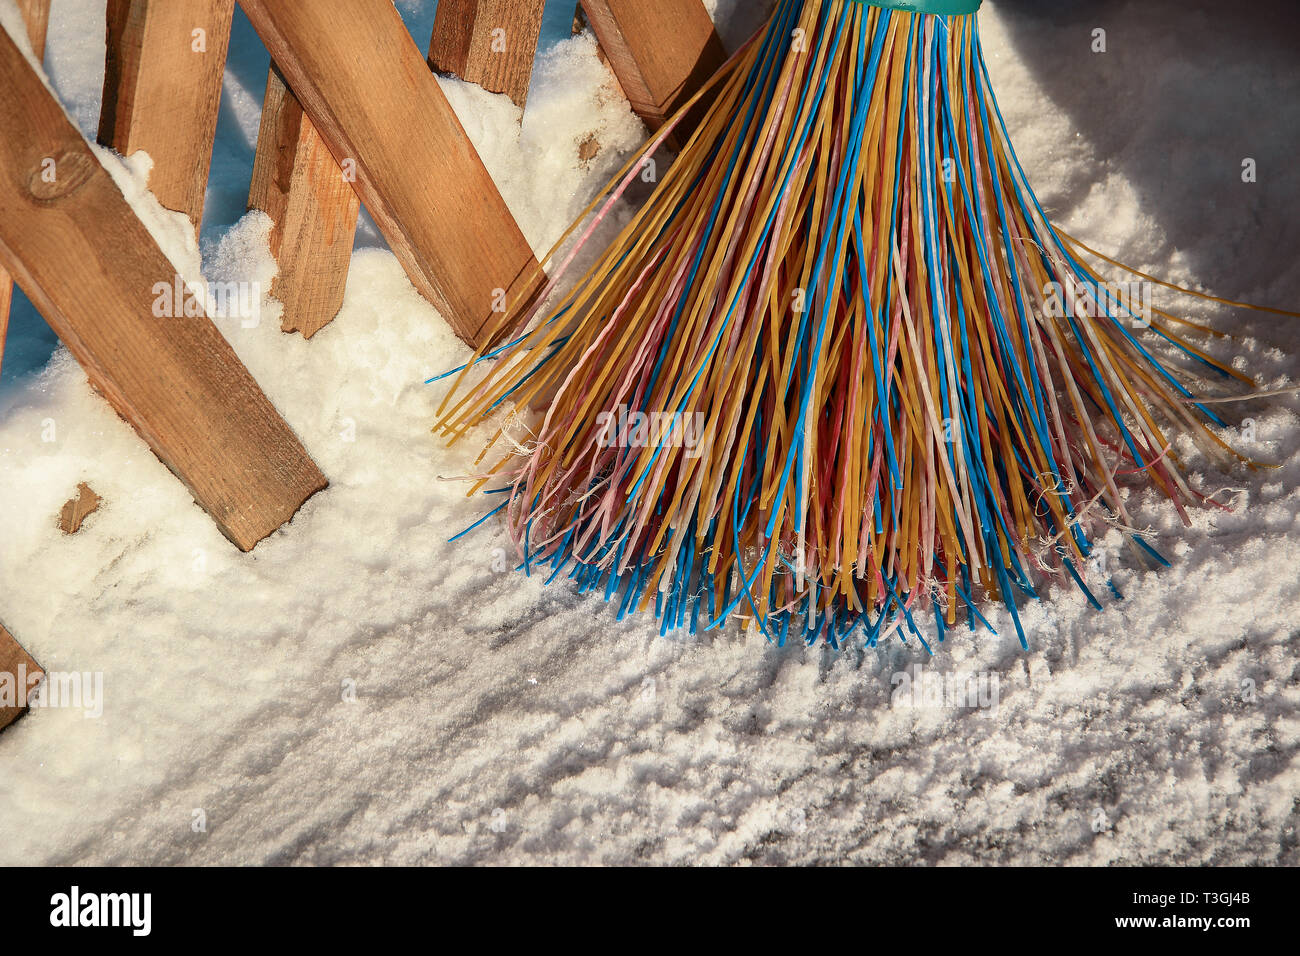 Una scopa in plastica con setole multicolore della pila si erge nella neve. Il concetto di pulizia dell'area di neve in inverno.Close-up di obj Foto Stock